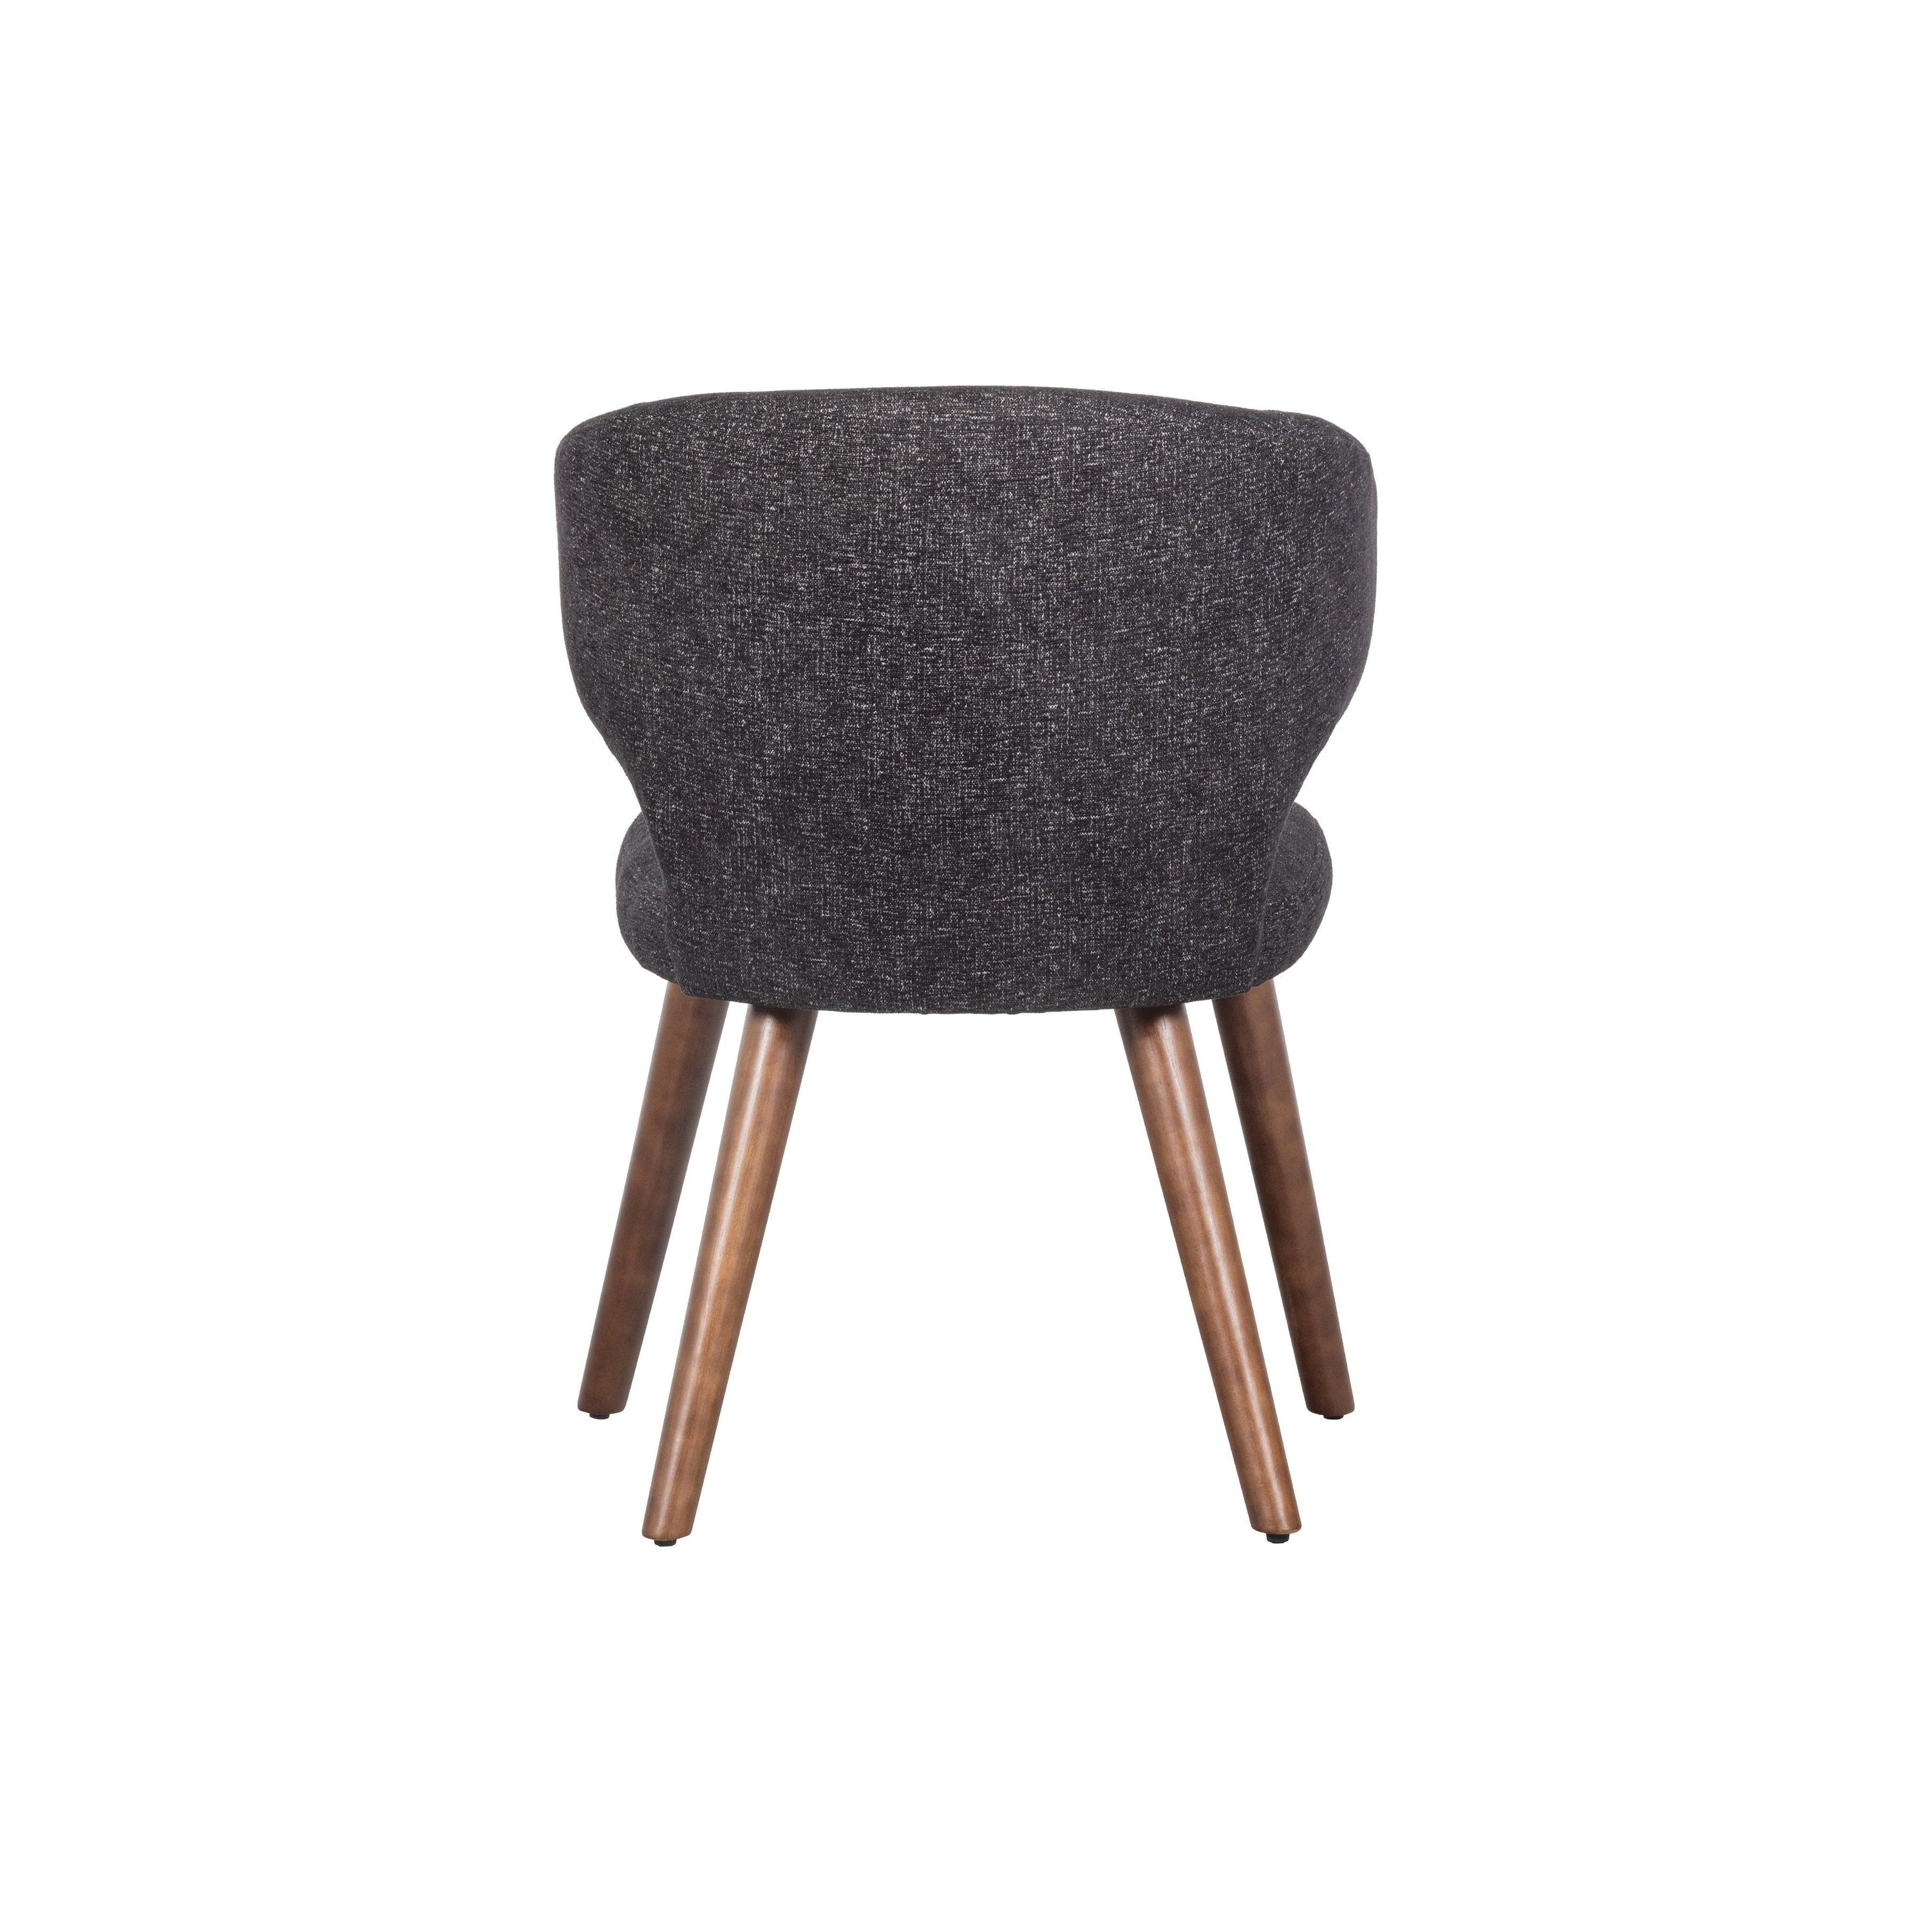 "CAPE" valgomojo kėdė, juoda spalva, mediena